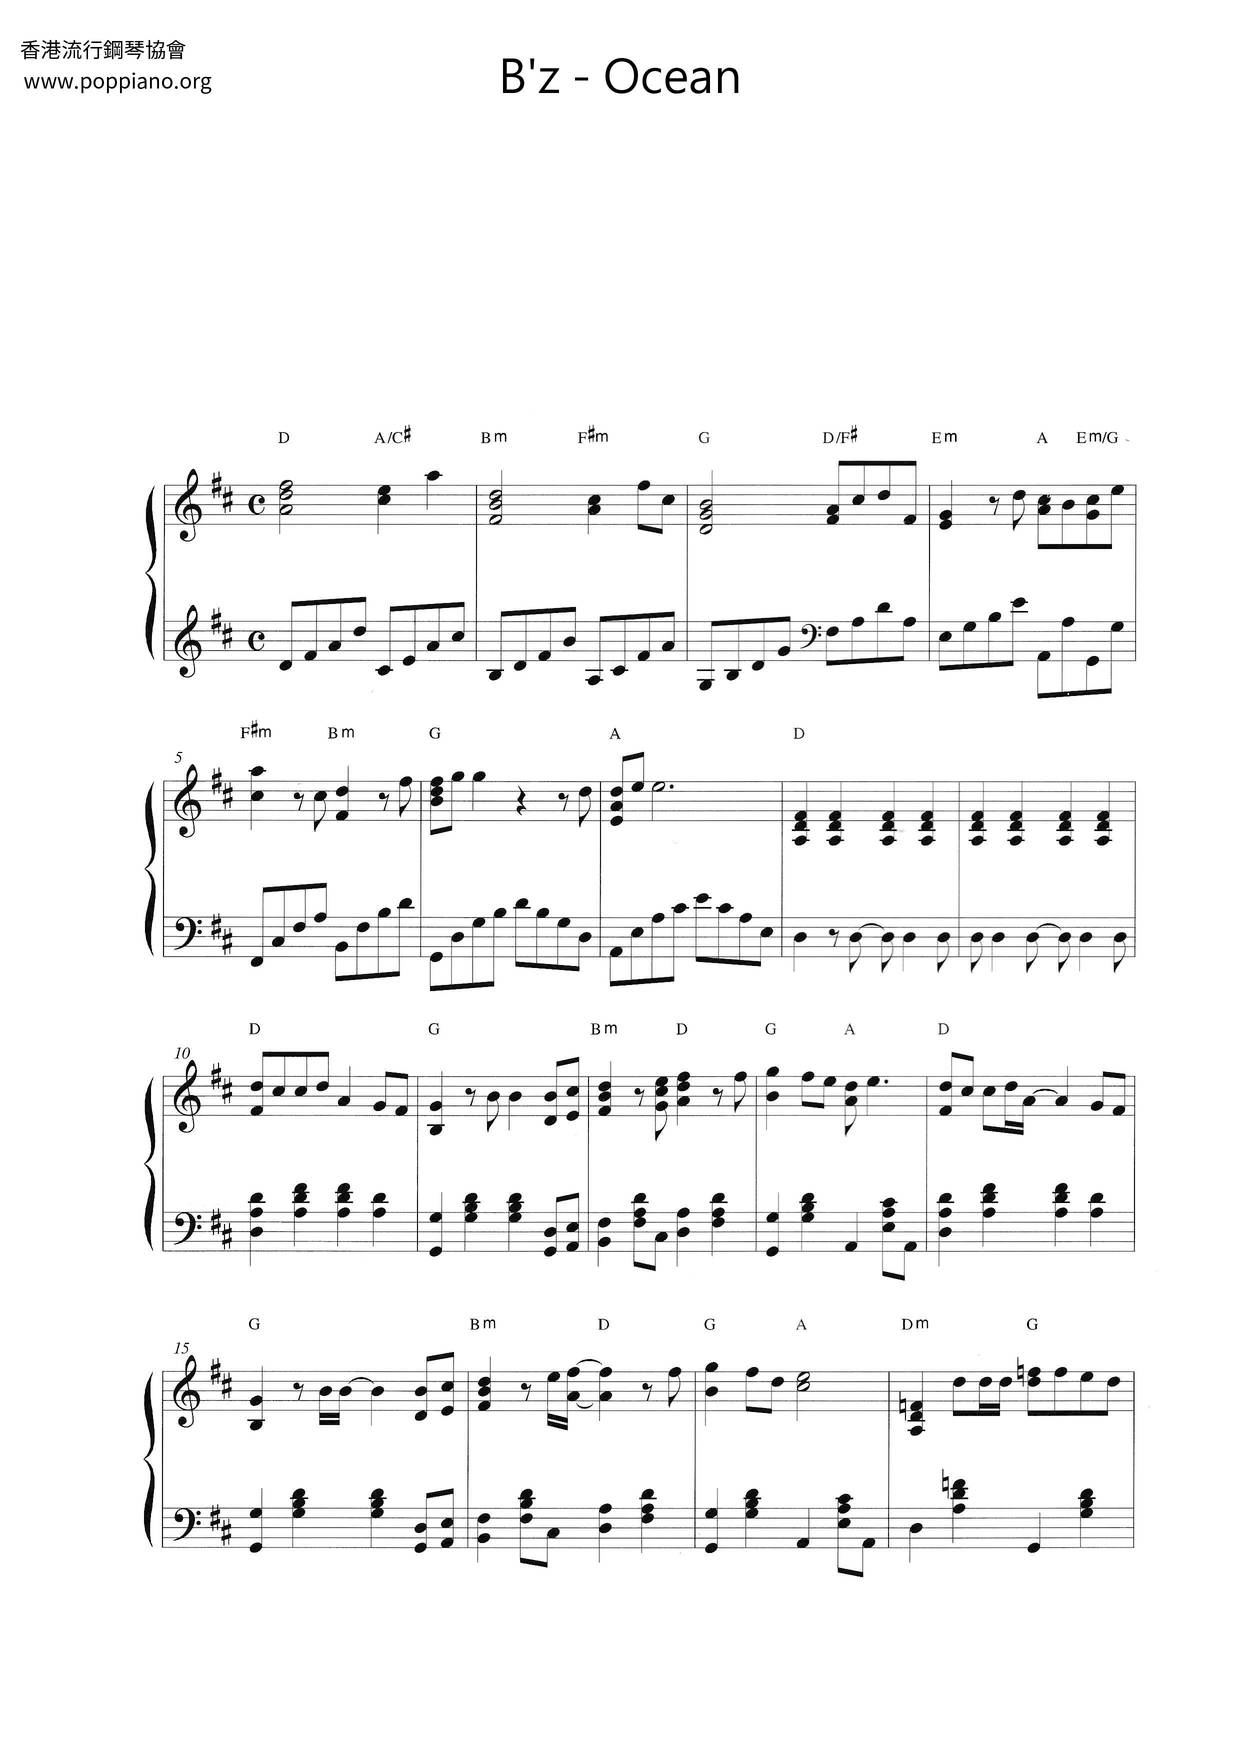 B Z 海猿主題曲 Ocean 琴譜 五線譜pdf オーシャン楽譜 香港流行鋼琴協會琴譜下載